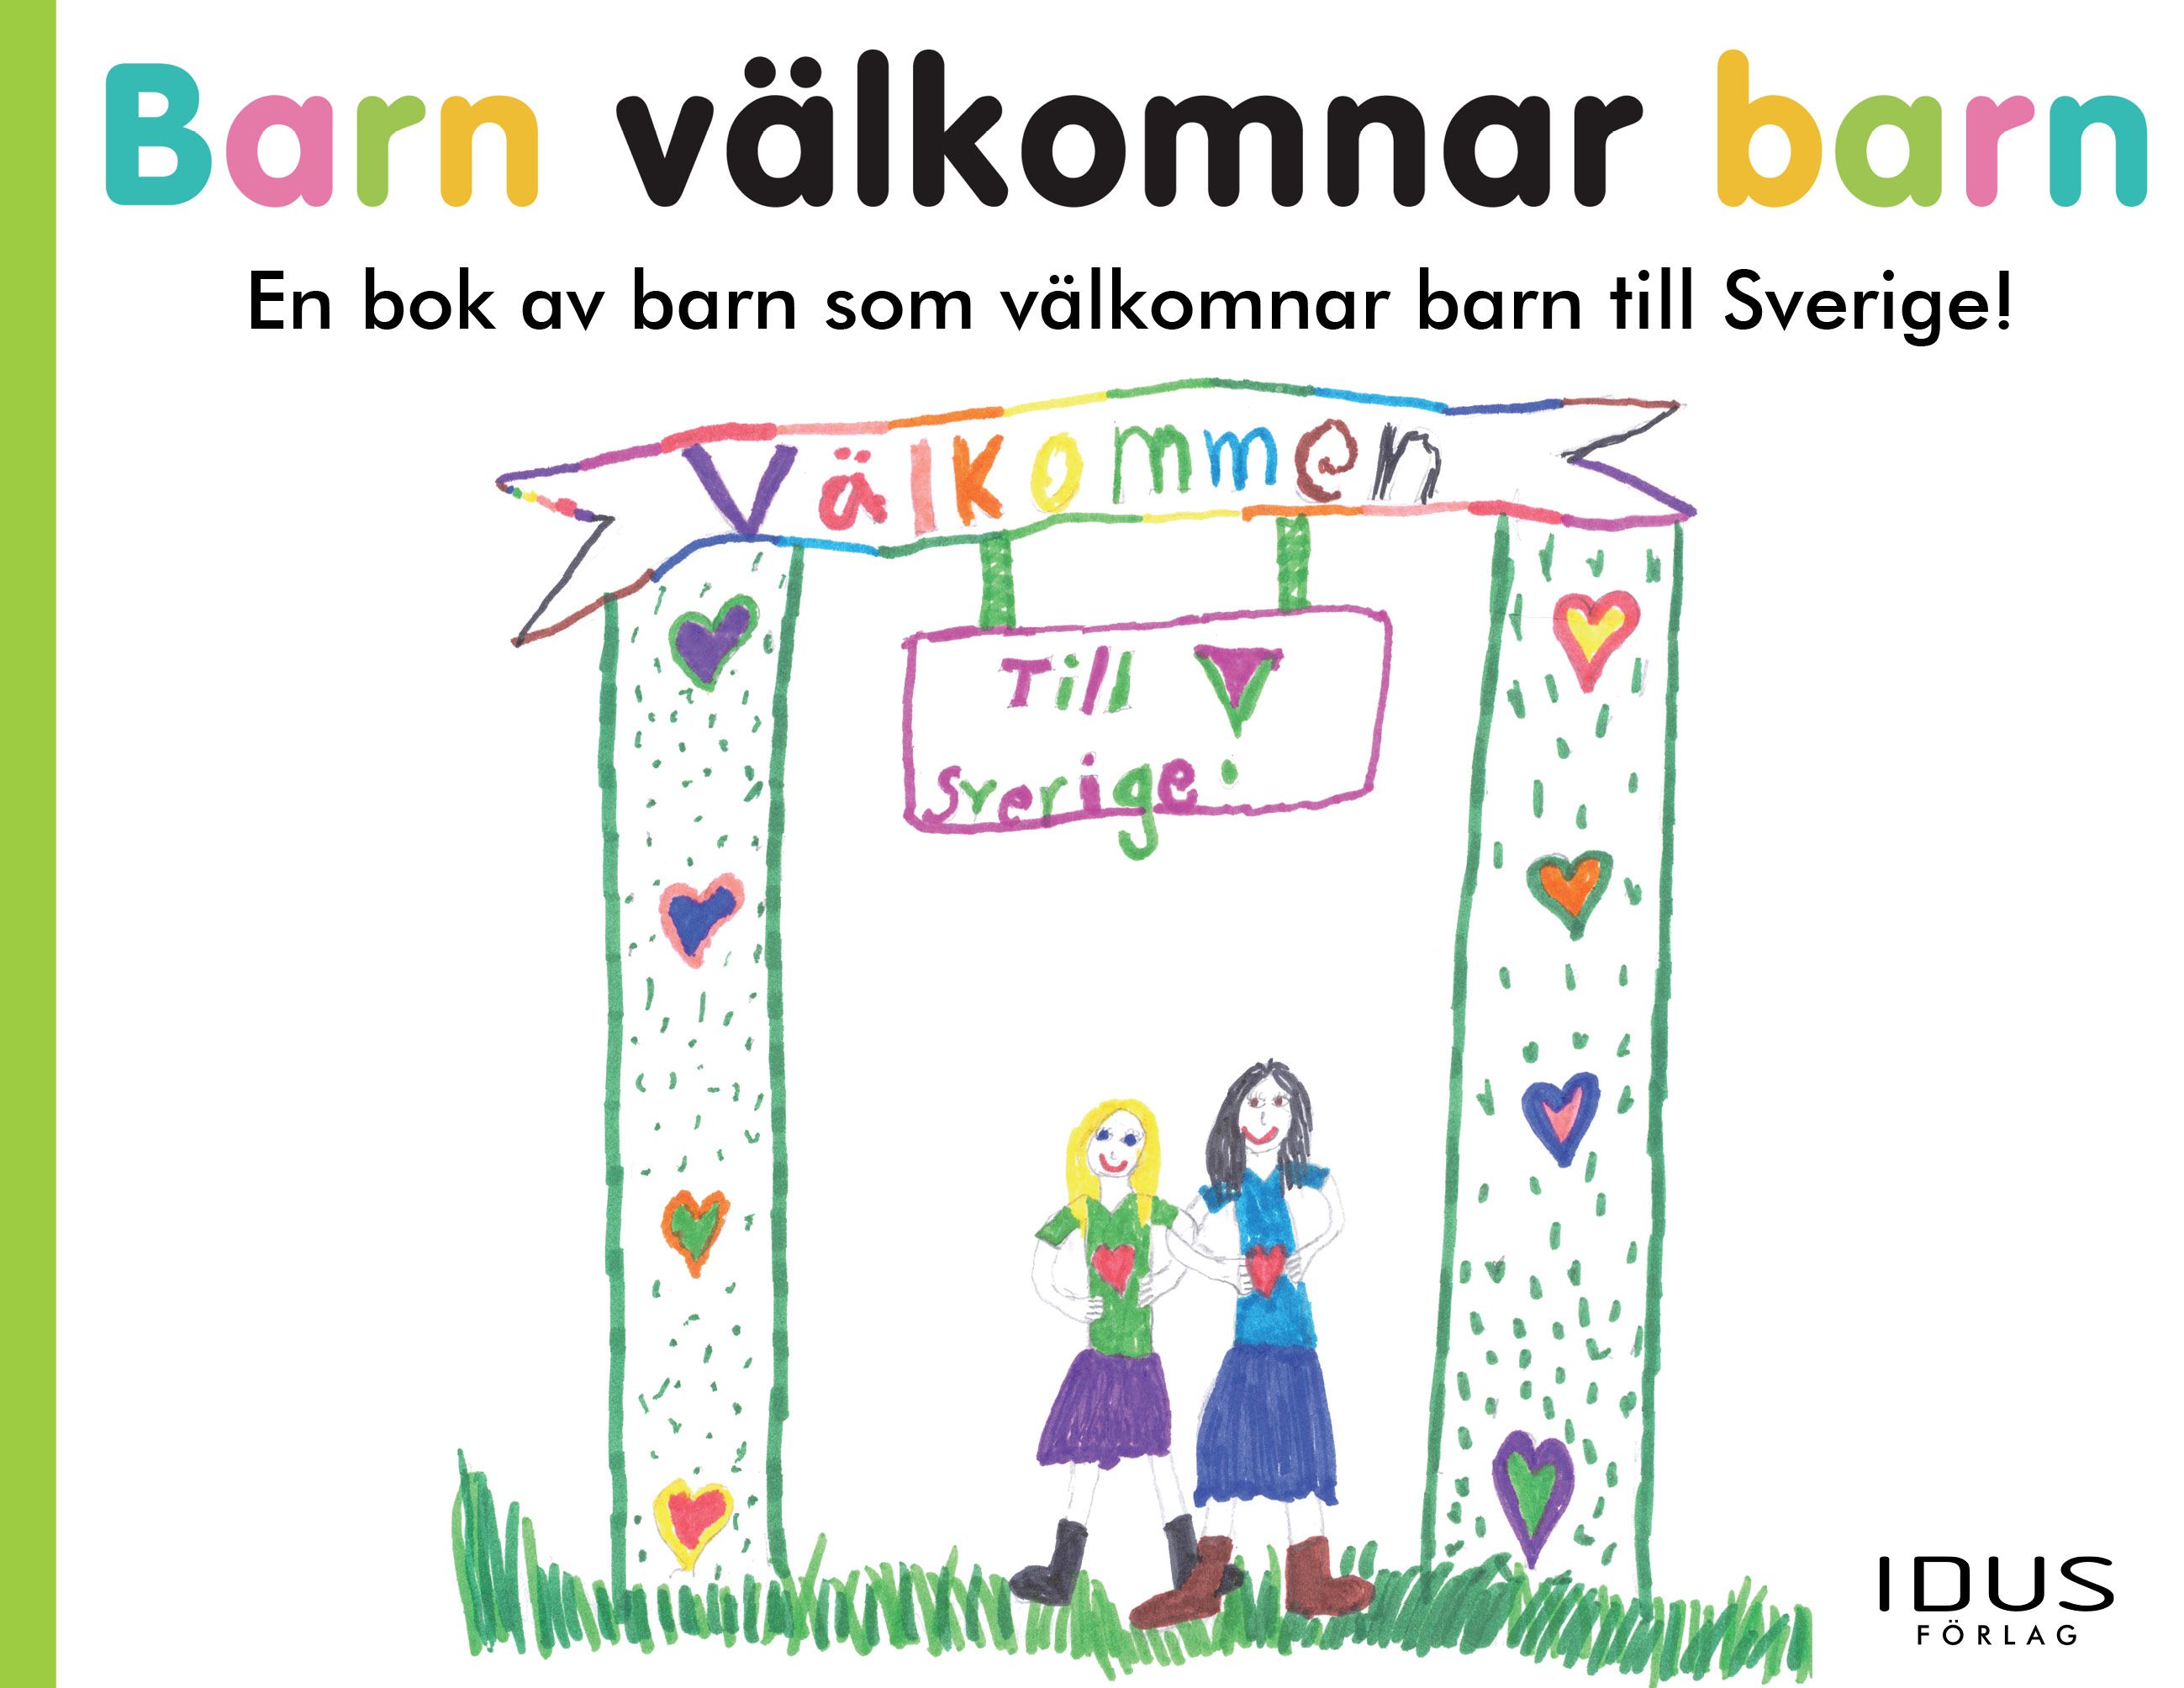 Barn välkomnar barn, eBook by Sveriges barn